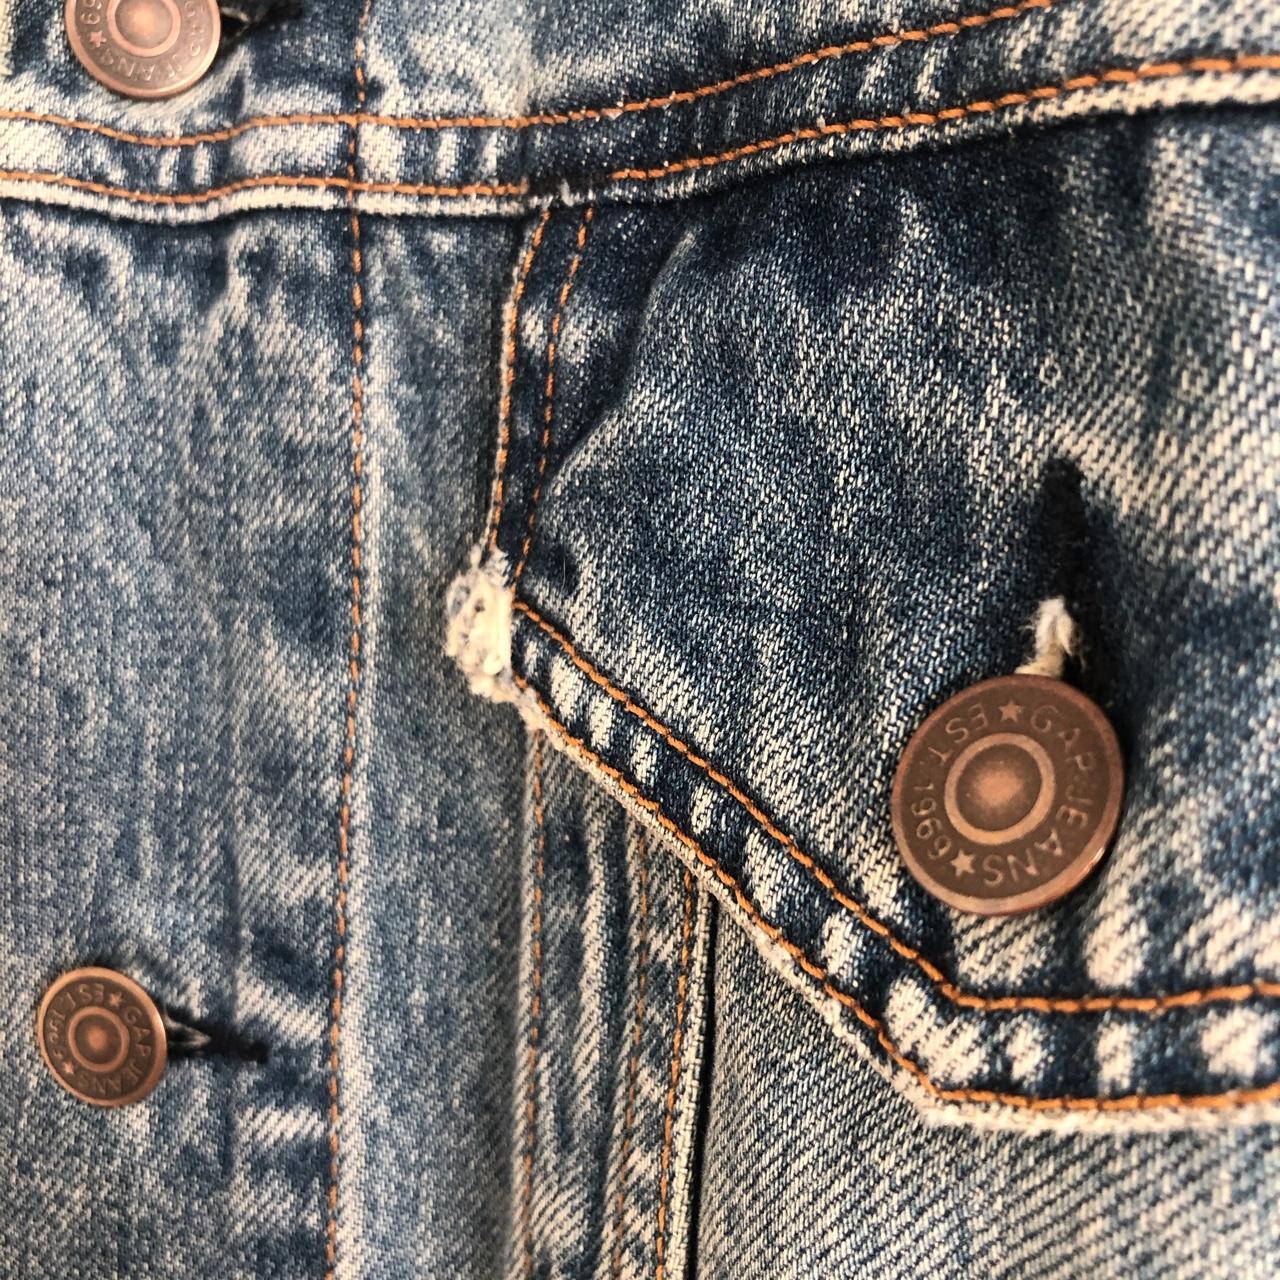 GAP Denim Jacket - Blue Jeans Label San Francisco... - Depop